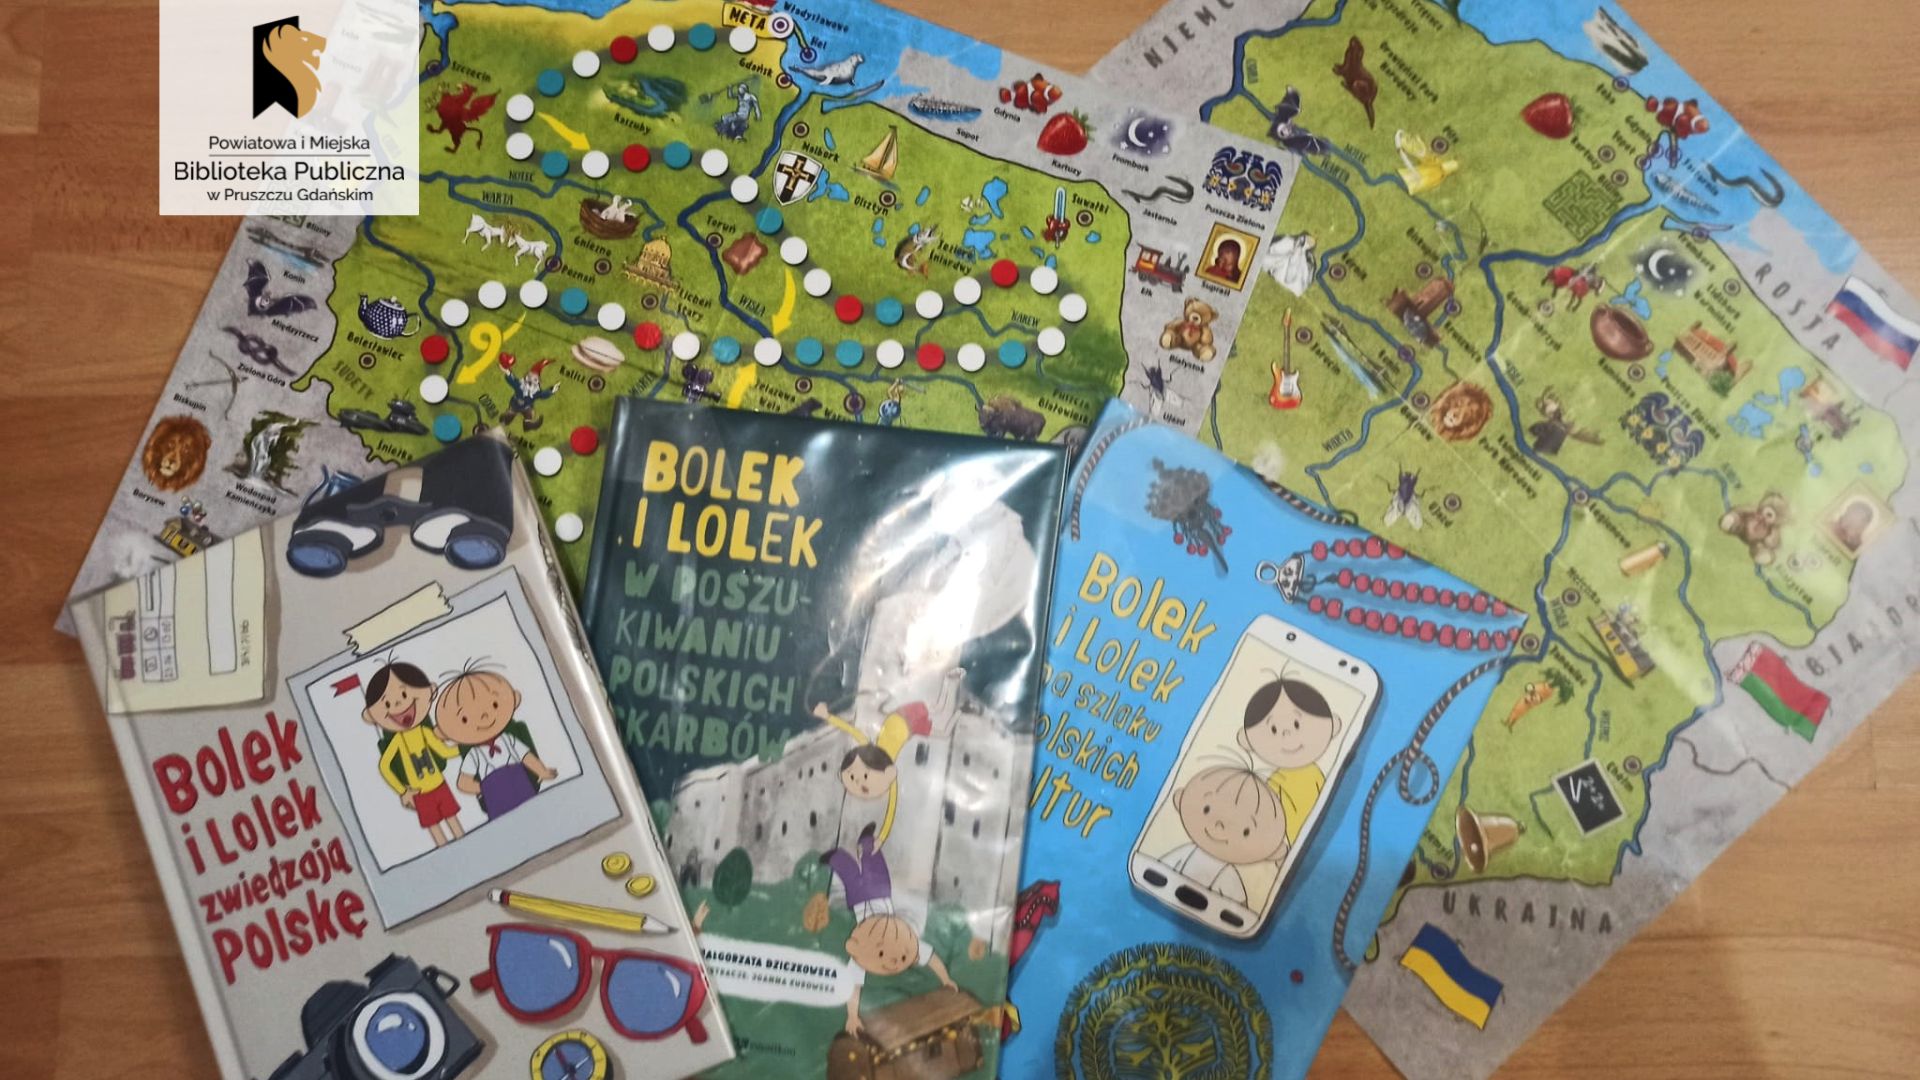 Trzy książki o Bolku i Lolku oraz dwie mapy Polski leżą na podłodze. Mapy są przeznaczone dla dzieci, nadrukowane są nich liczne ilustracje przedstawiające najważniejsze atrakcje określonych miejsc.